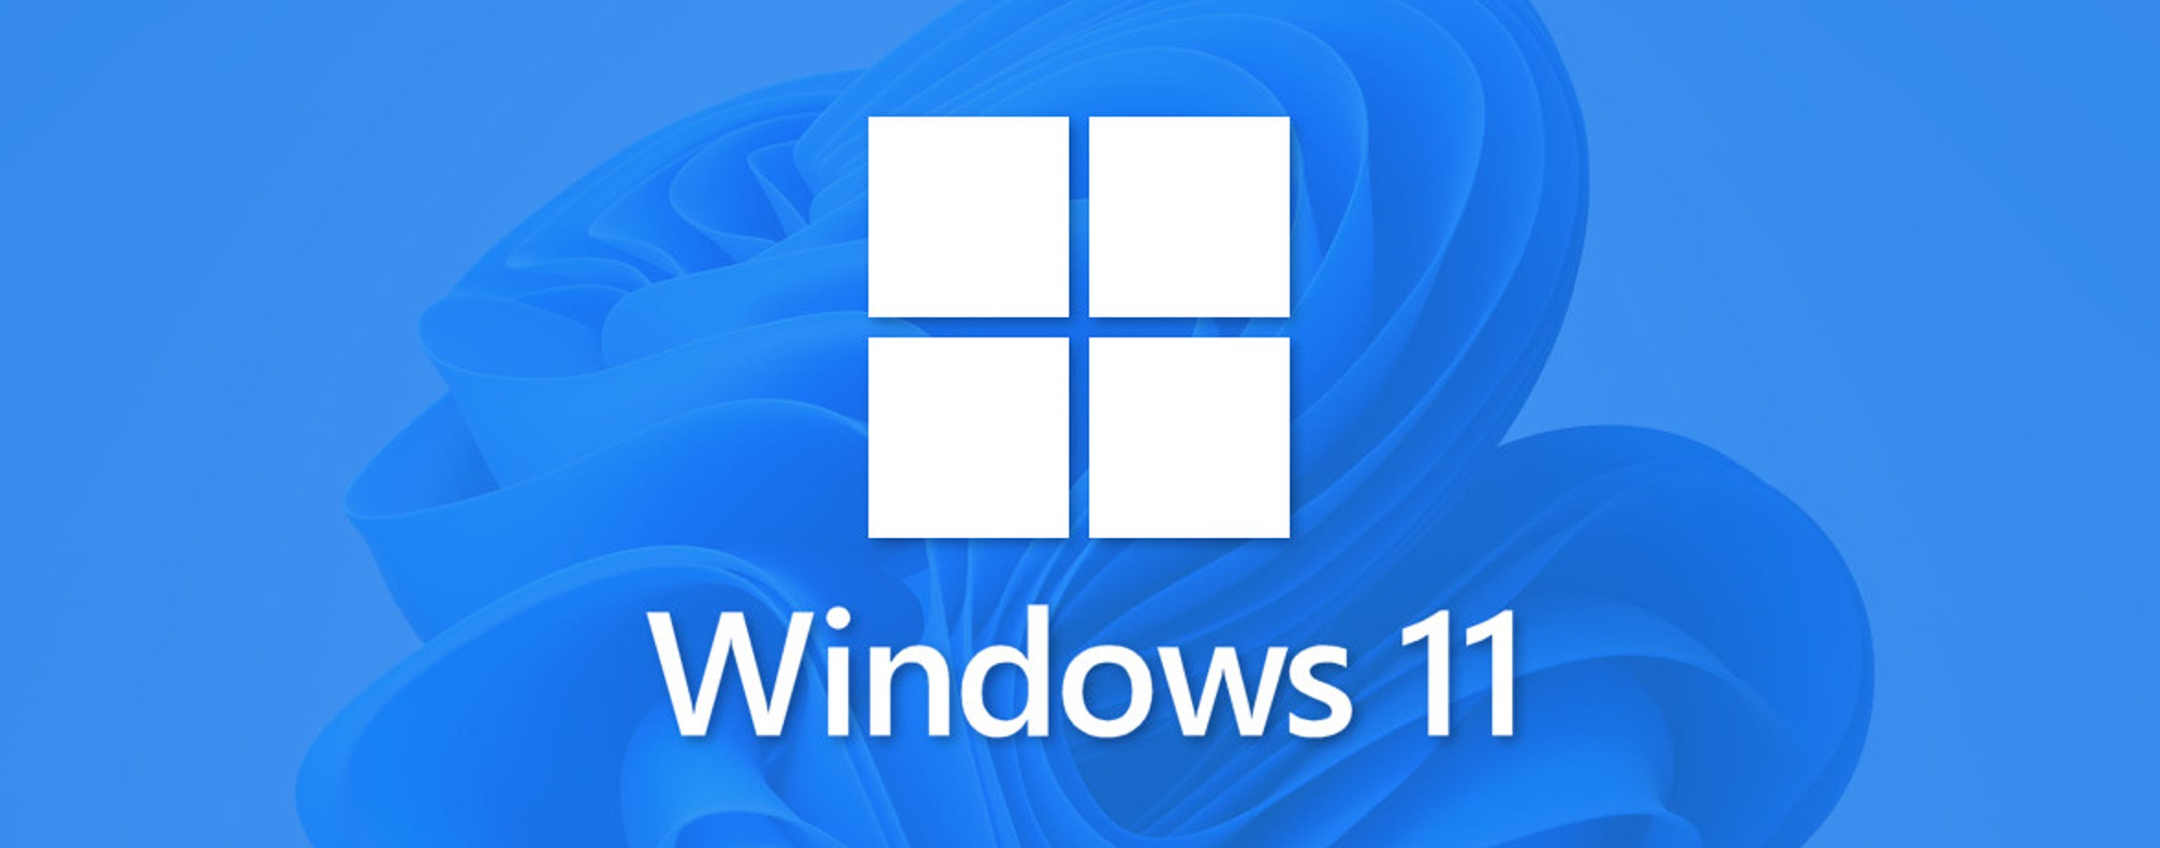 Windows 11: attuale quota di utilizzo pari al 16,1%, secondo AdDuplex